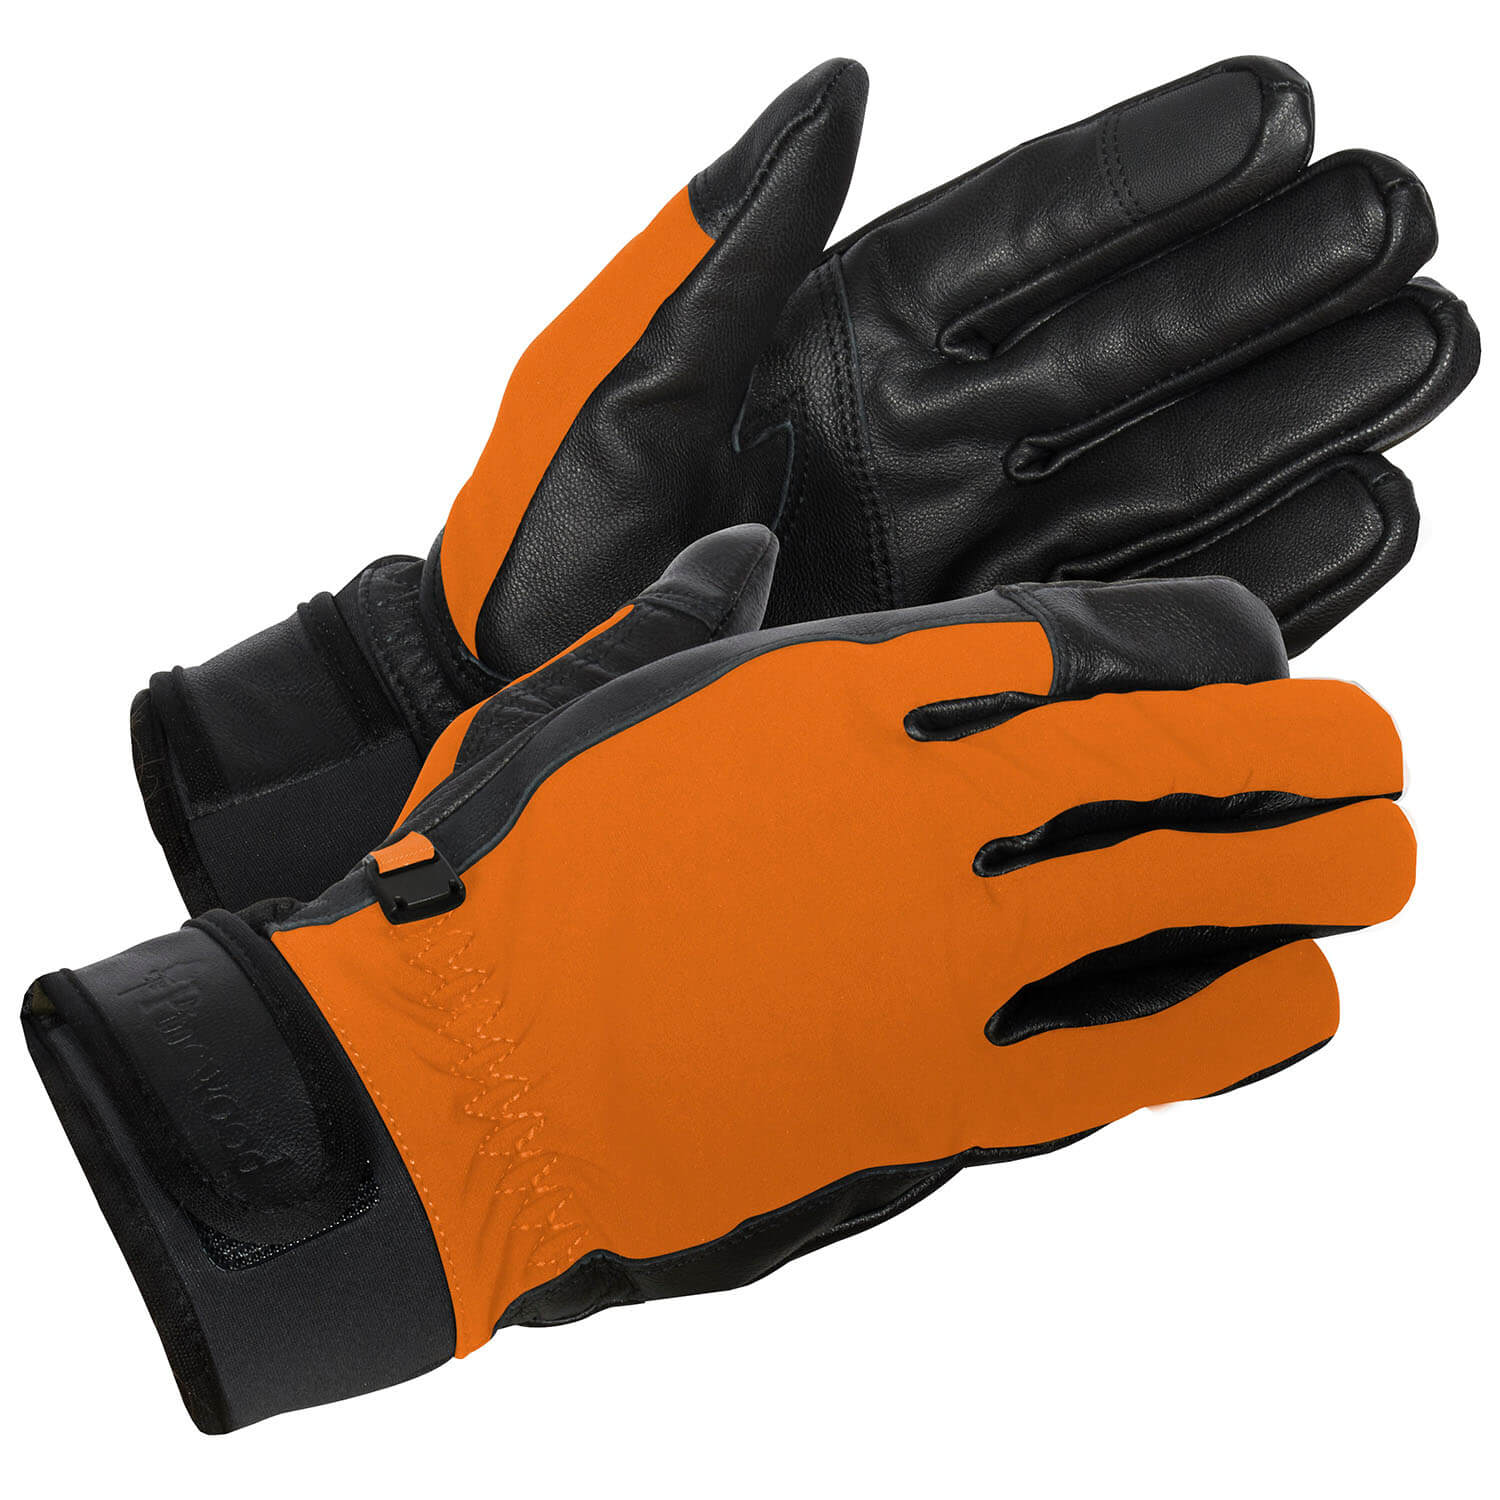  Pinewood Furudal handschoen Hunter (oranje/zwart) - Handschoenen